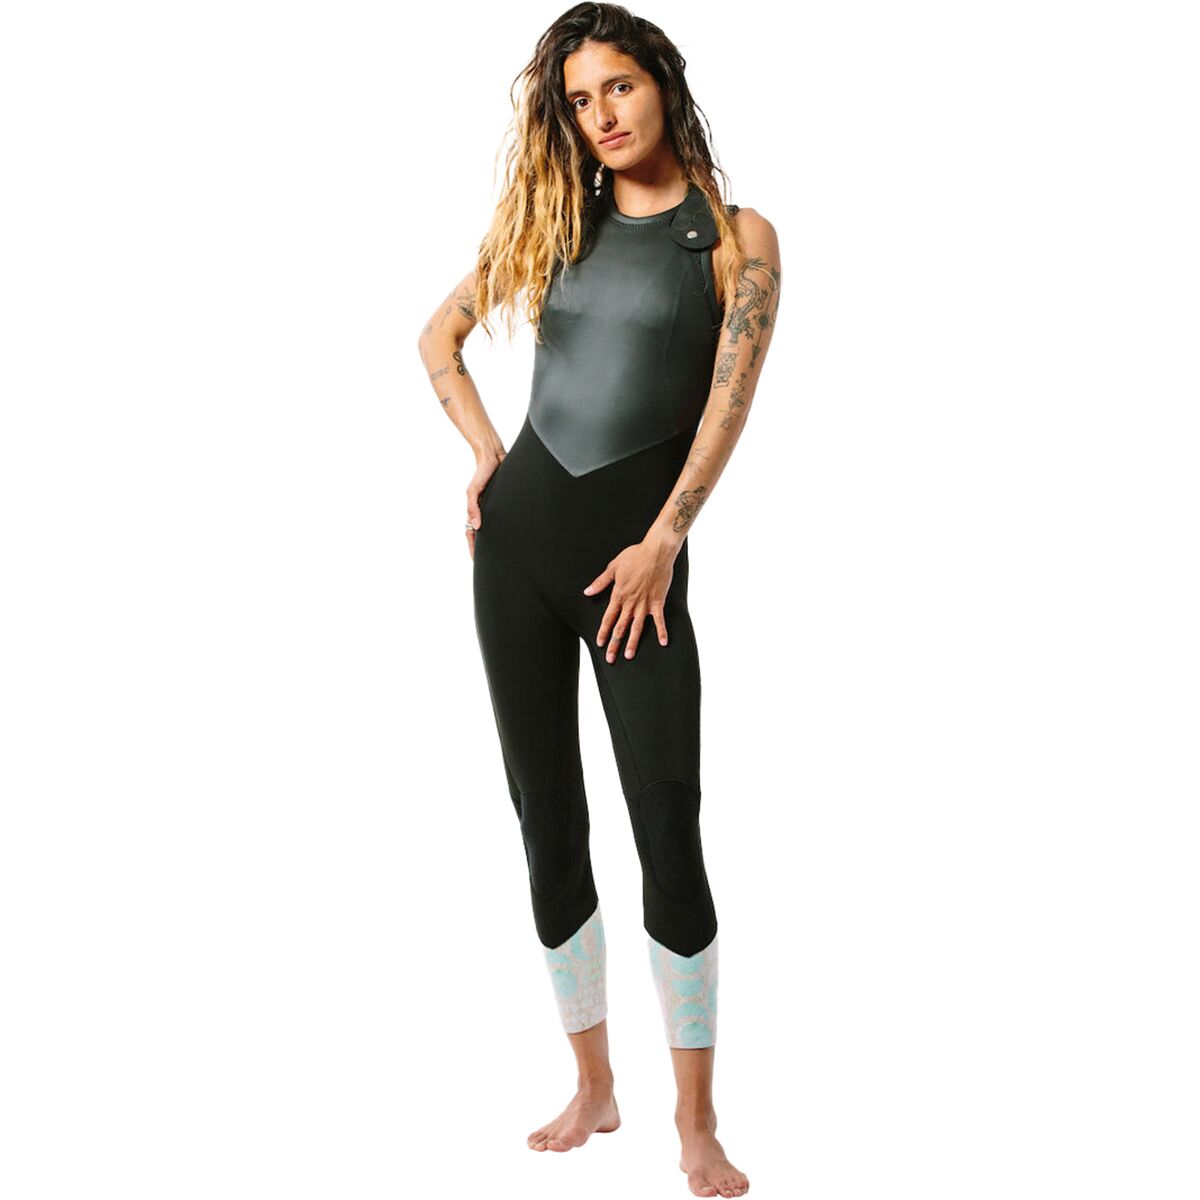 Kassia Surf 2mm Luna Long Jane Wetsuit - Women's